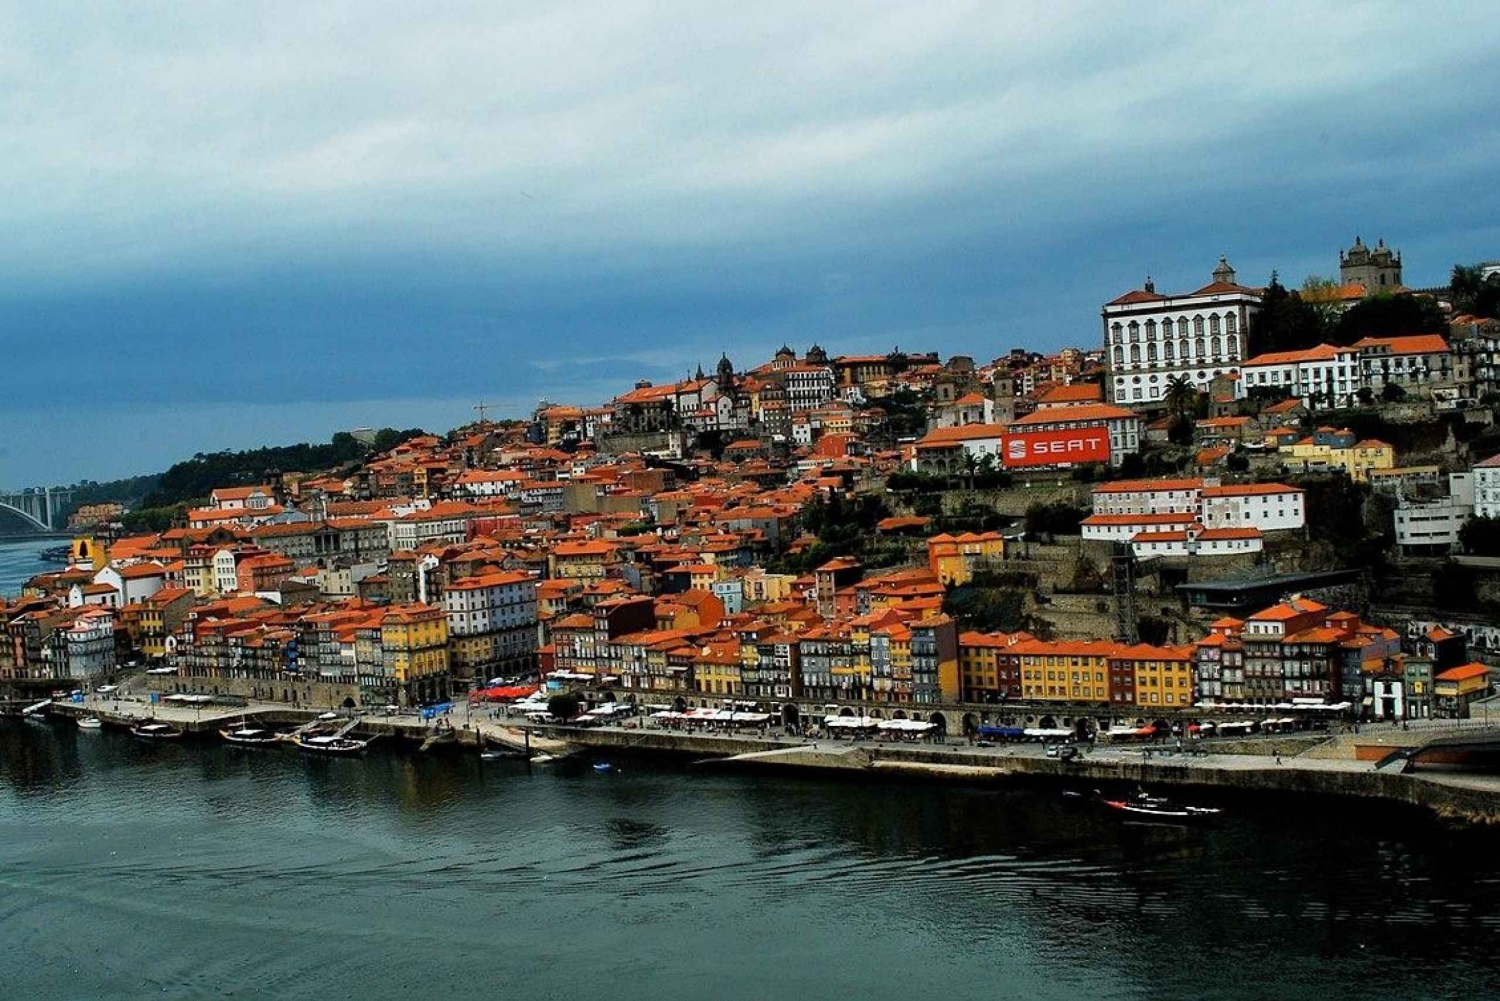 Porto: Yksityinen kuljetus Algarveen, jossa pysähtyy jopa 2 kaupunkia.